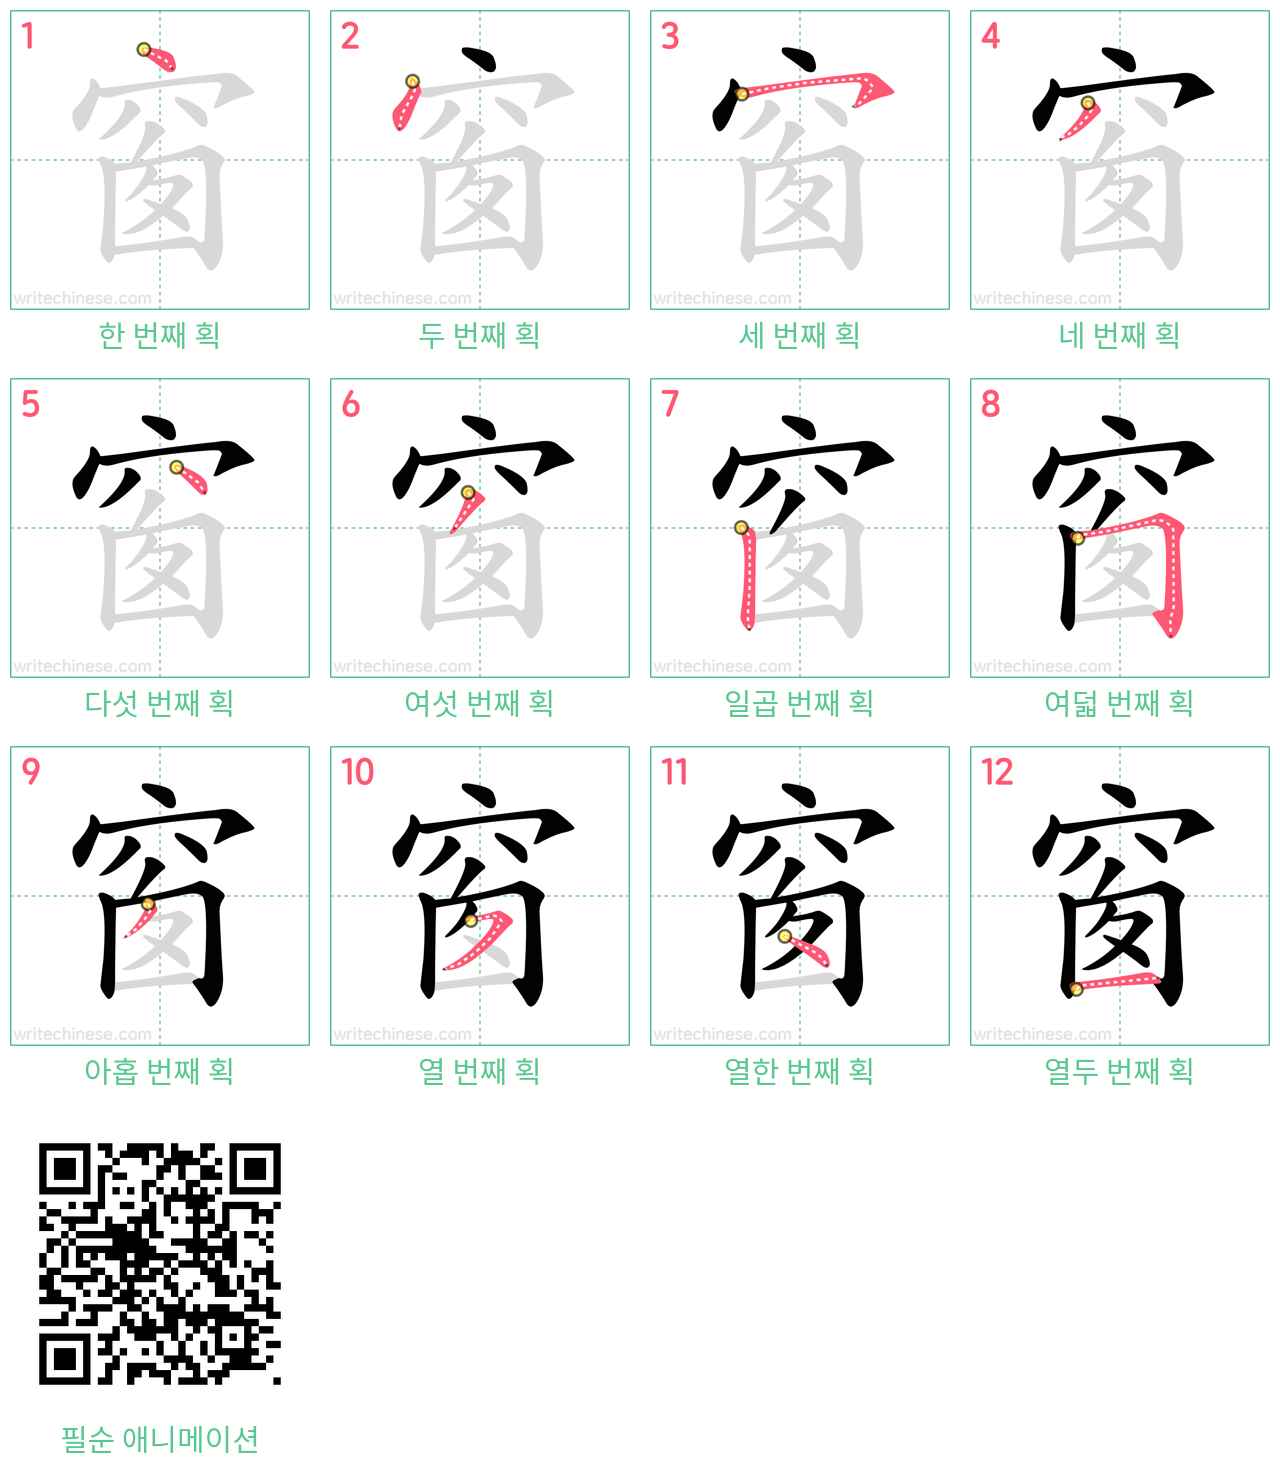 窗 step-by-step stroke order diagrams